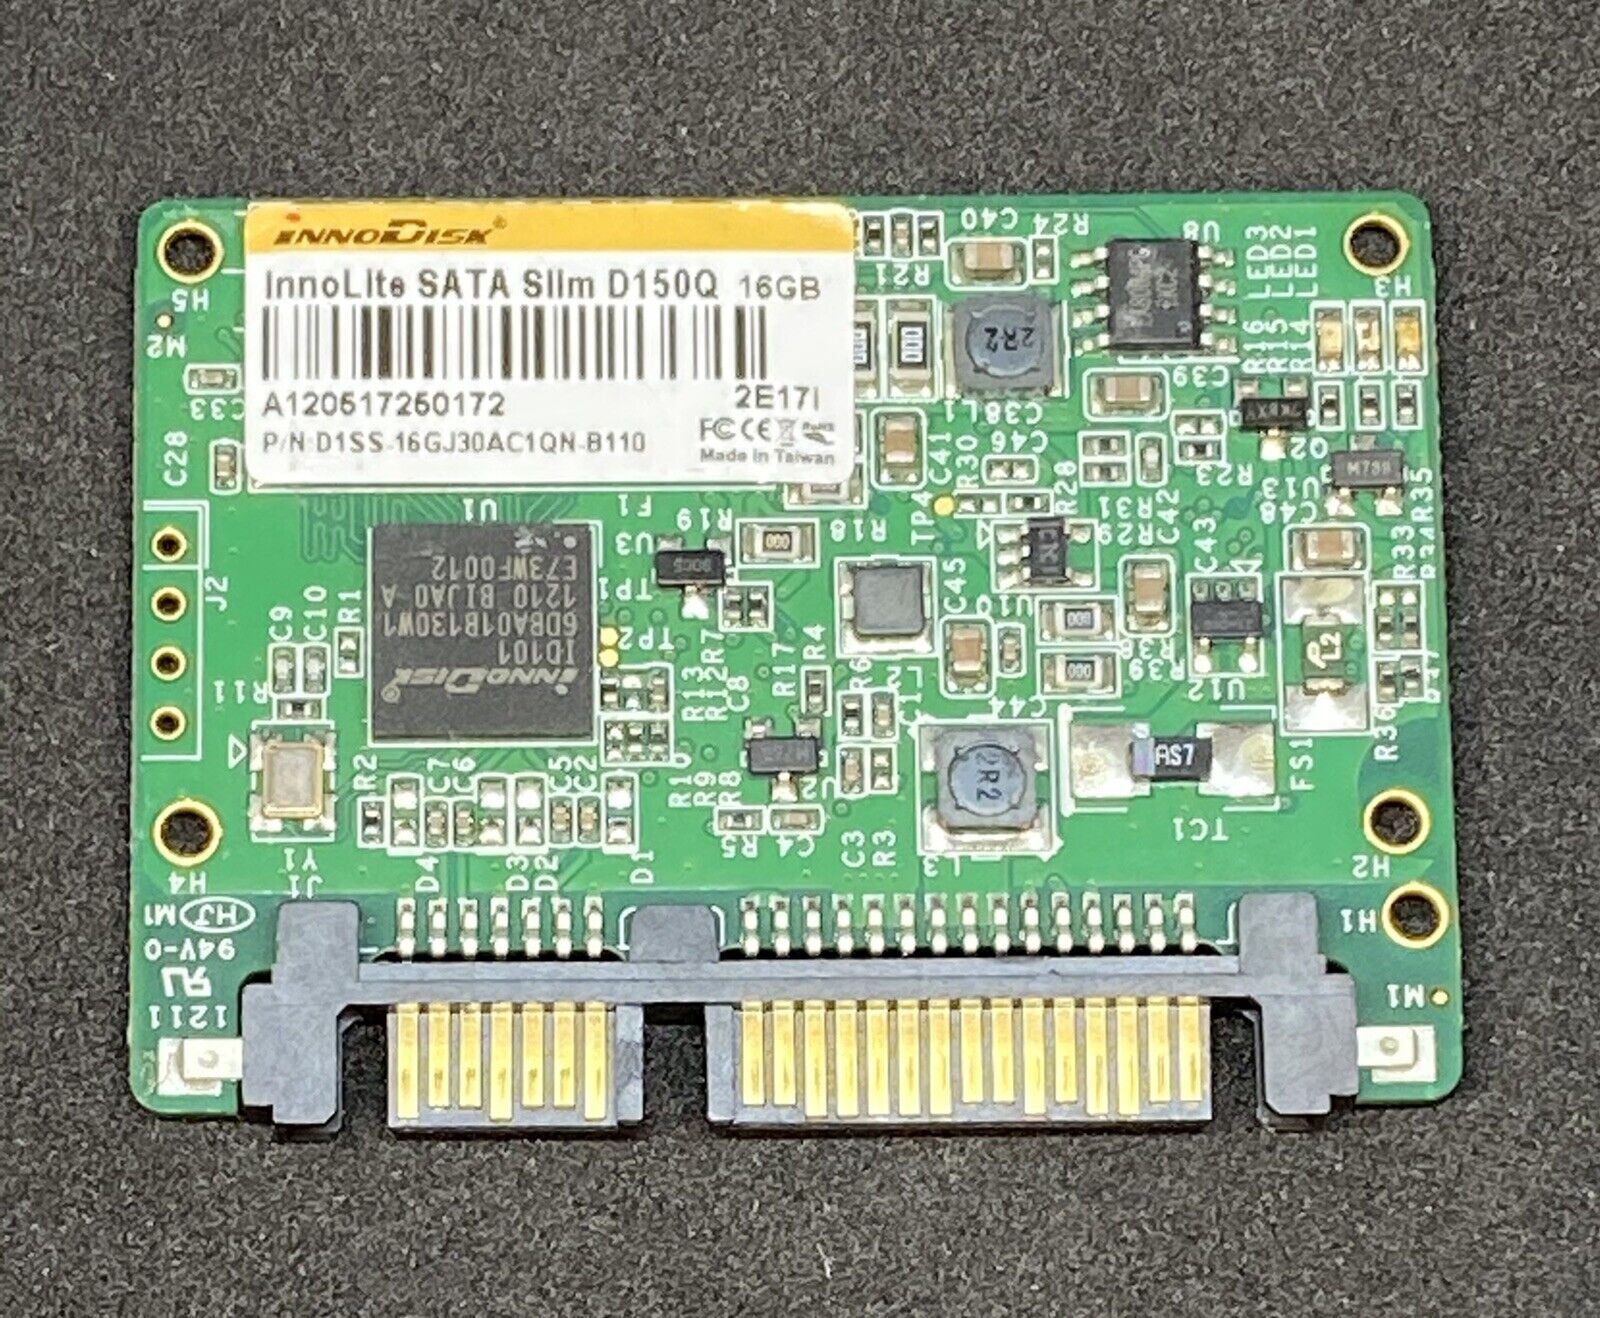 InnoDisk InnoLite Slim D150Q 16GB SATA SSD D1SS-16GJ30AC1QN-B110